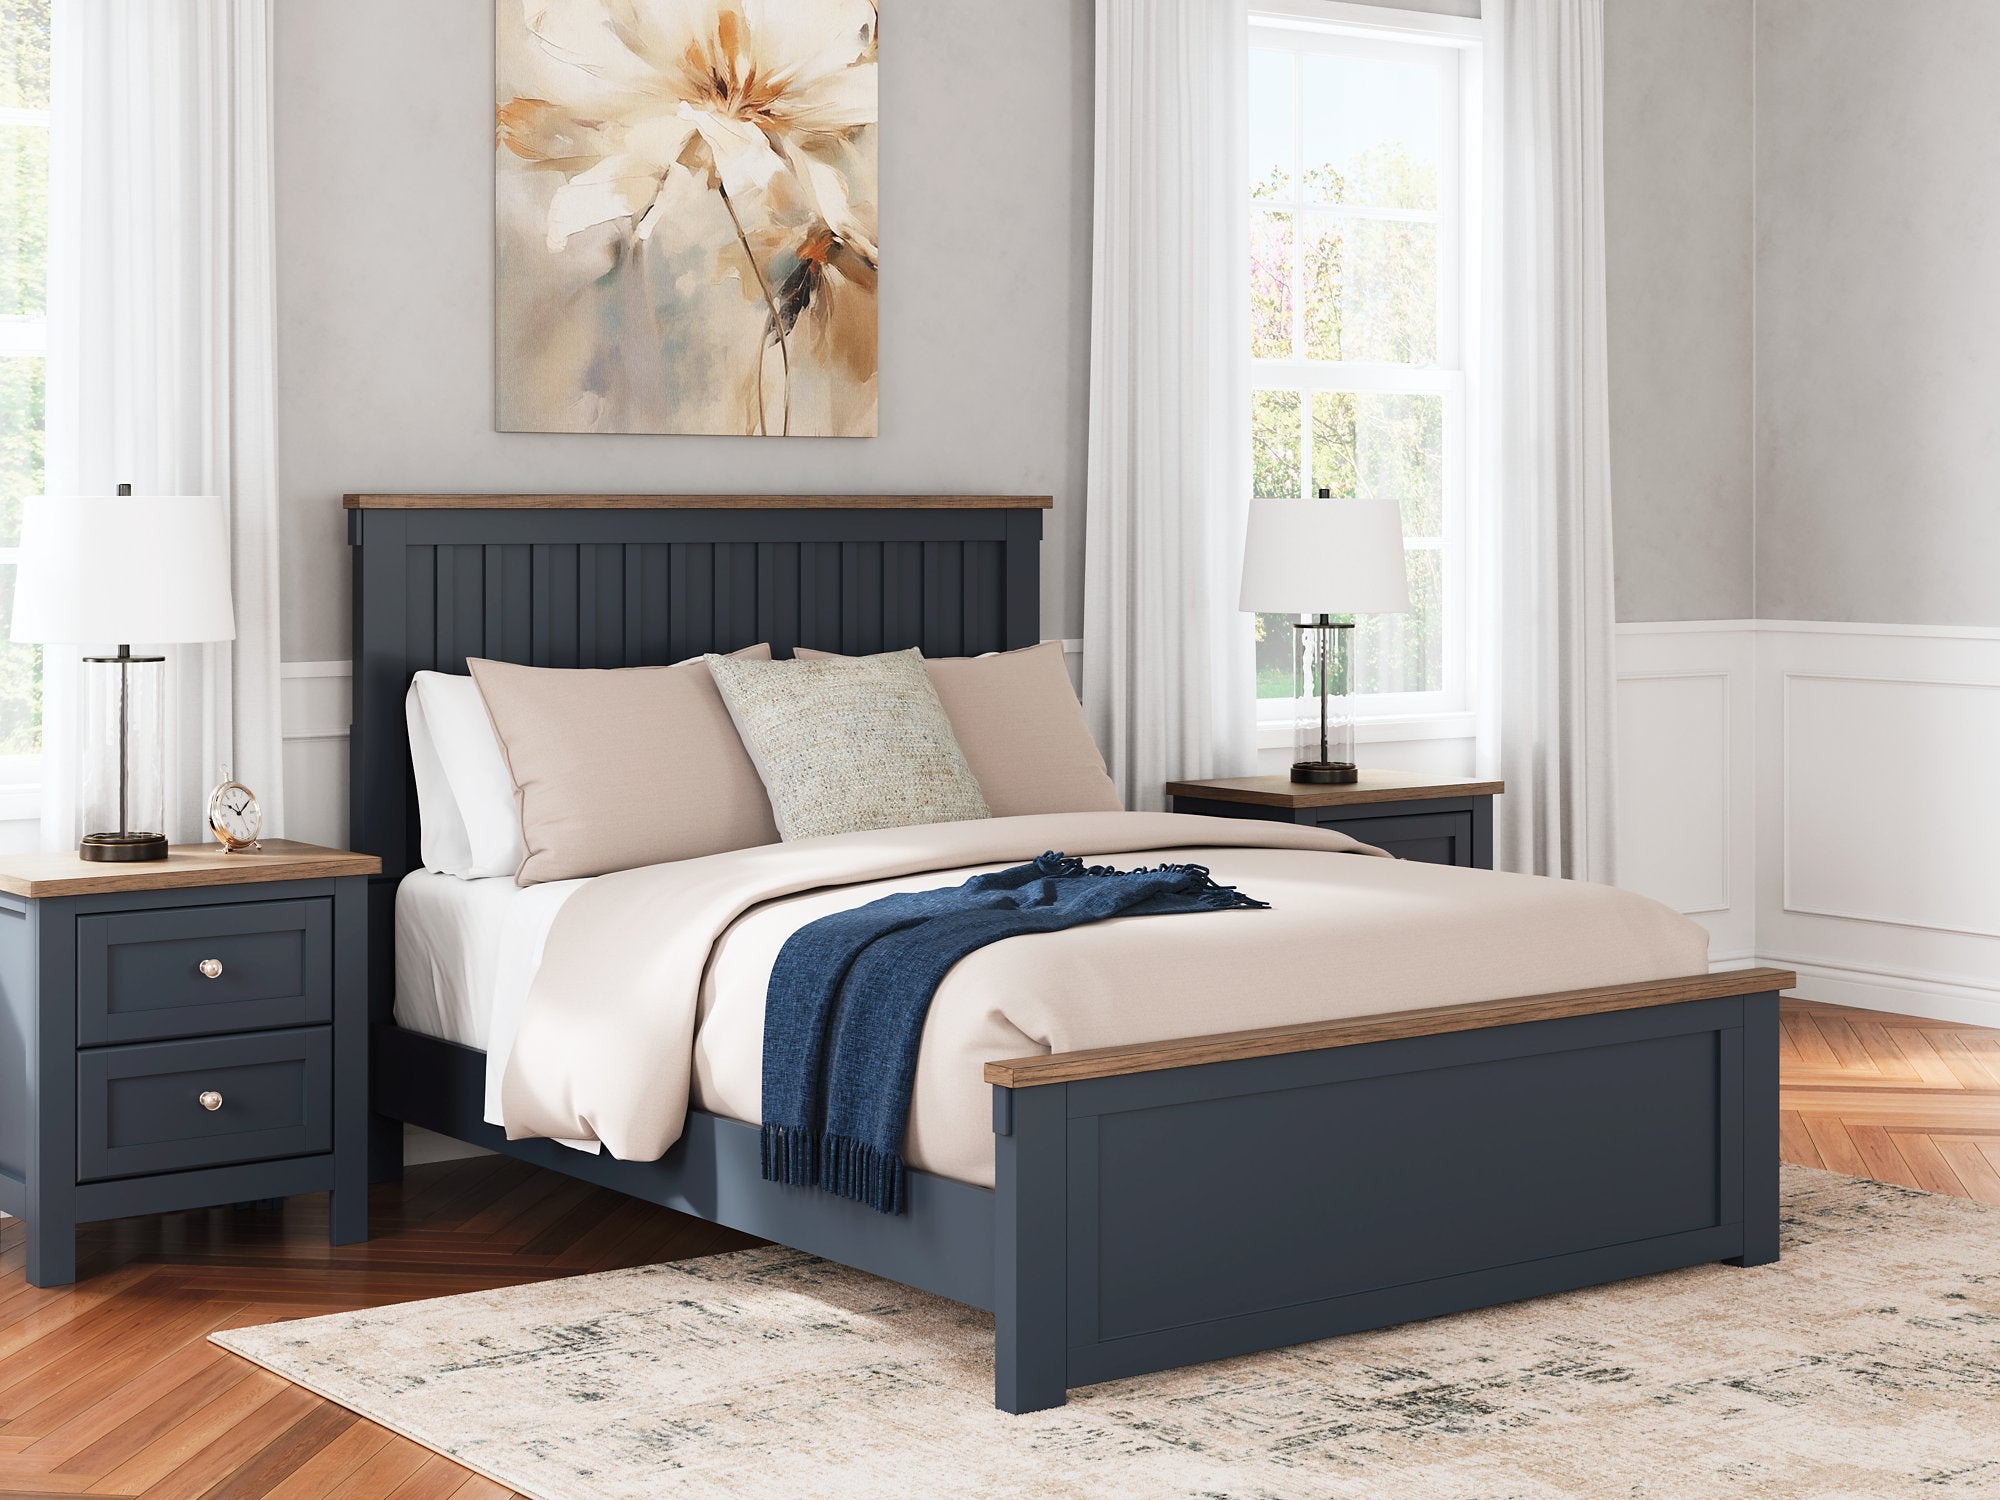 Landocken Bed - Luxury Home Furniture (MI)